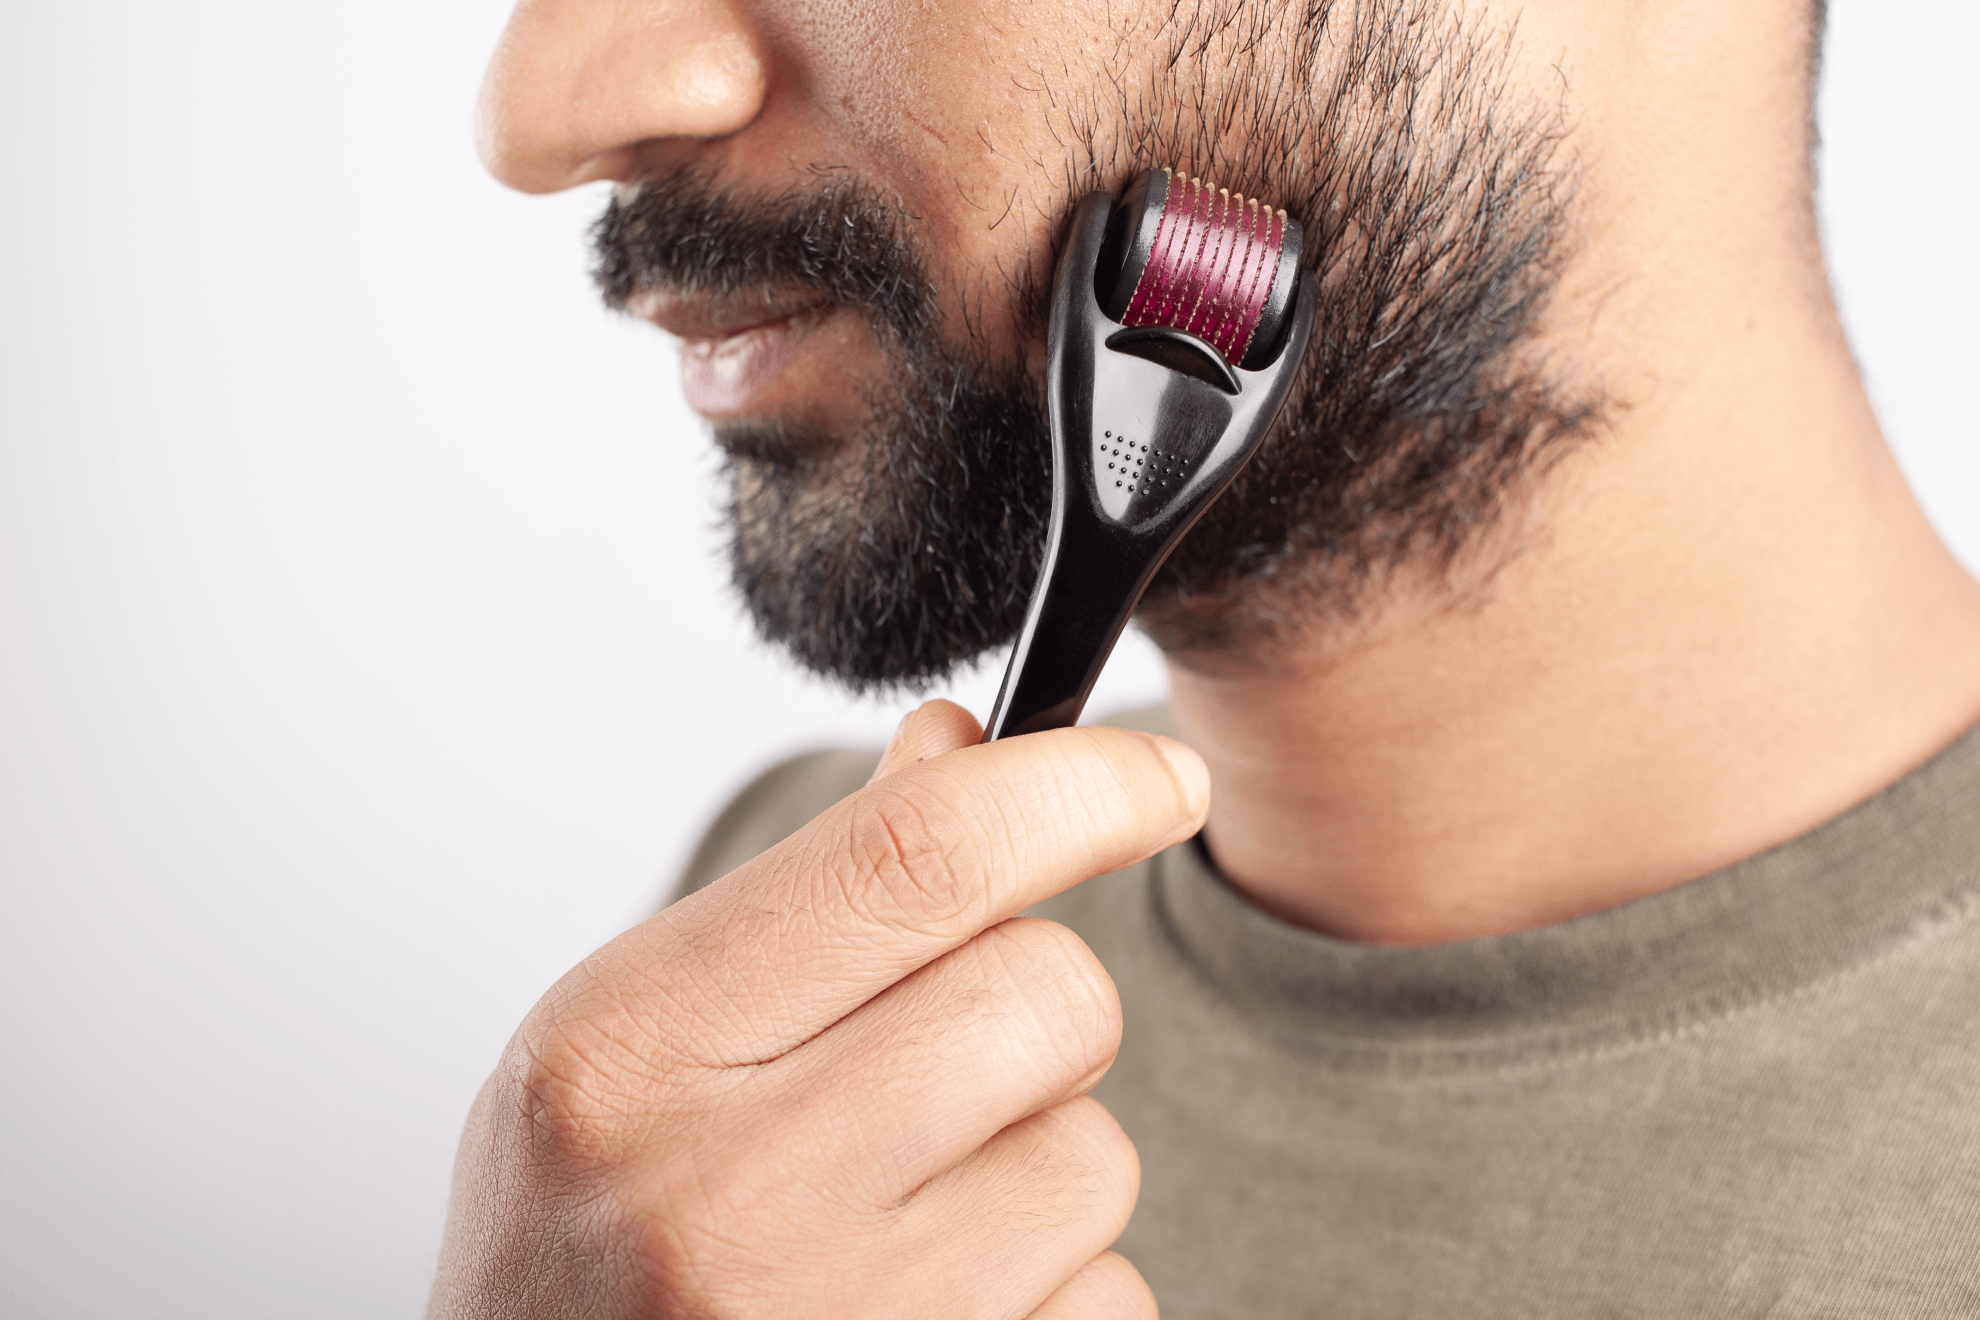 Sigue estos consejos para tener una barba fuerte, sana y cuidada.